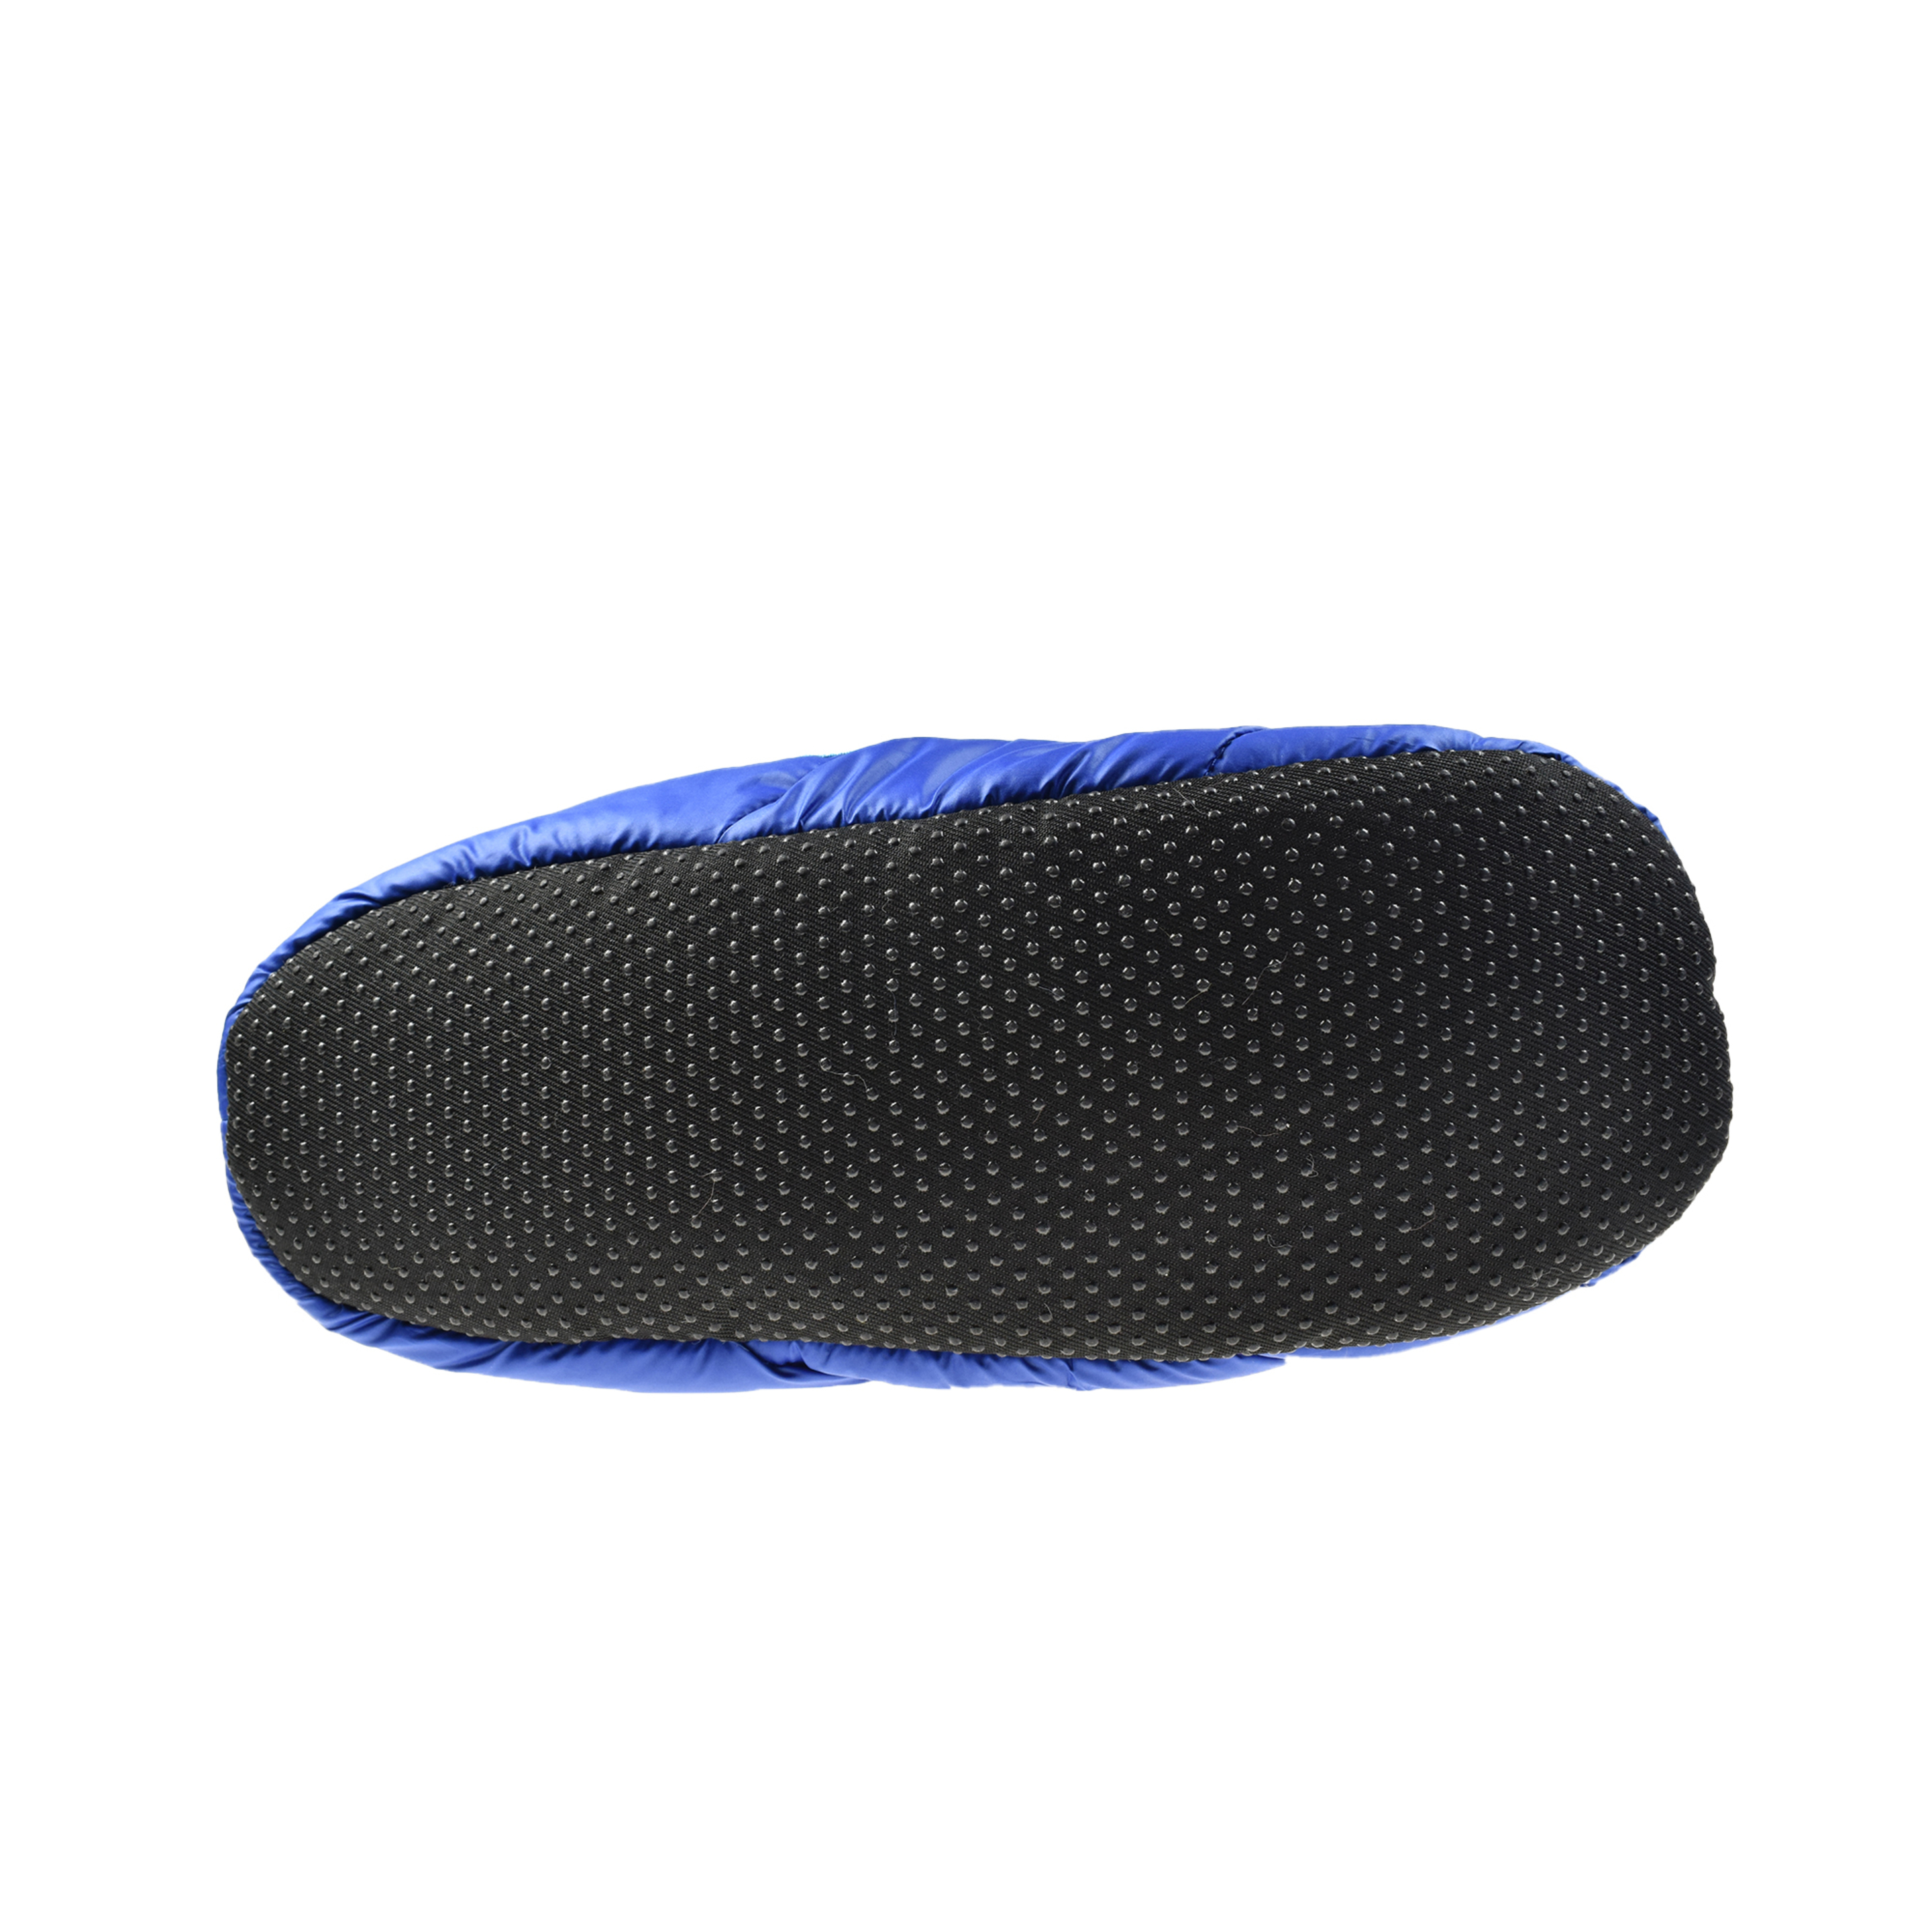 Zapatillas De Casa Y Camping Nuvola New Light - Azul Claro - Pantuflas  MKP